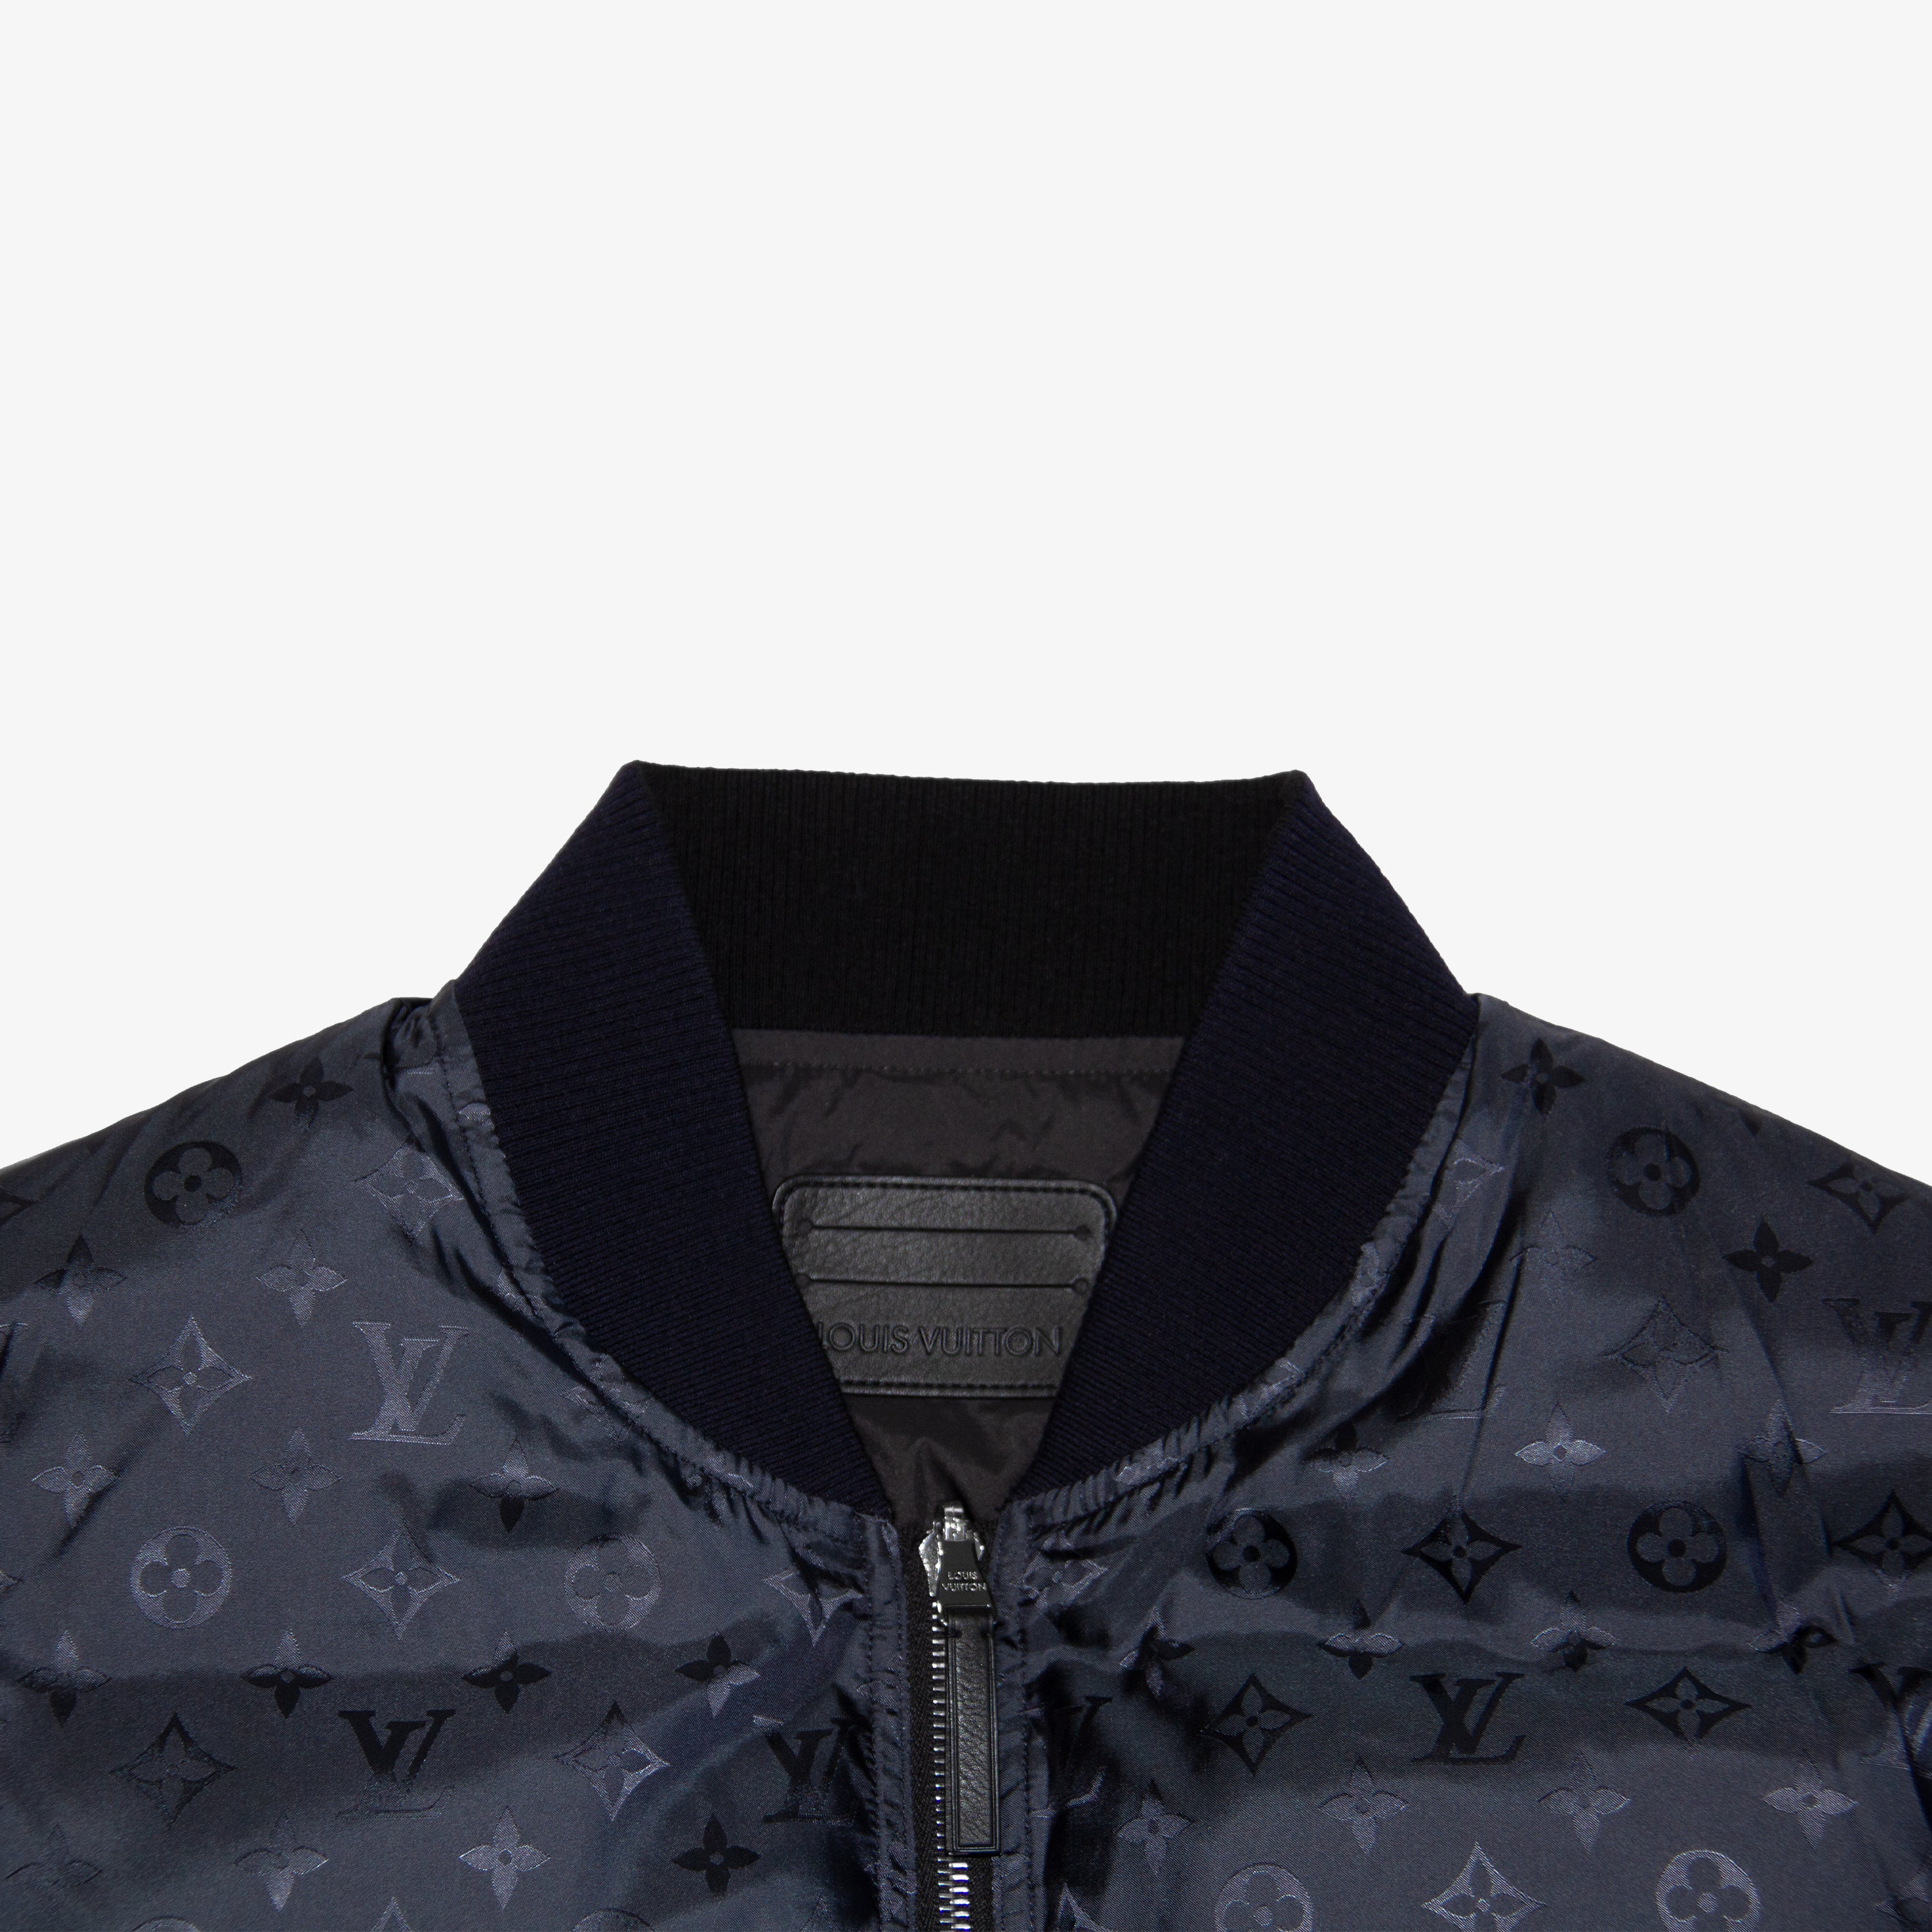 Louis Vuitton Black Damier Reversible Puffer Jacket